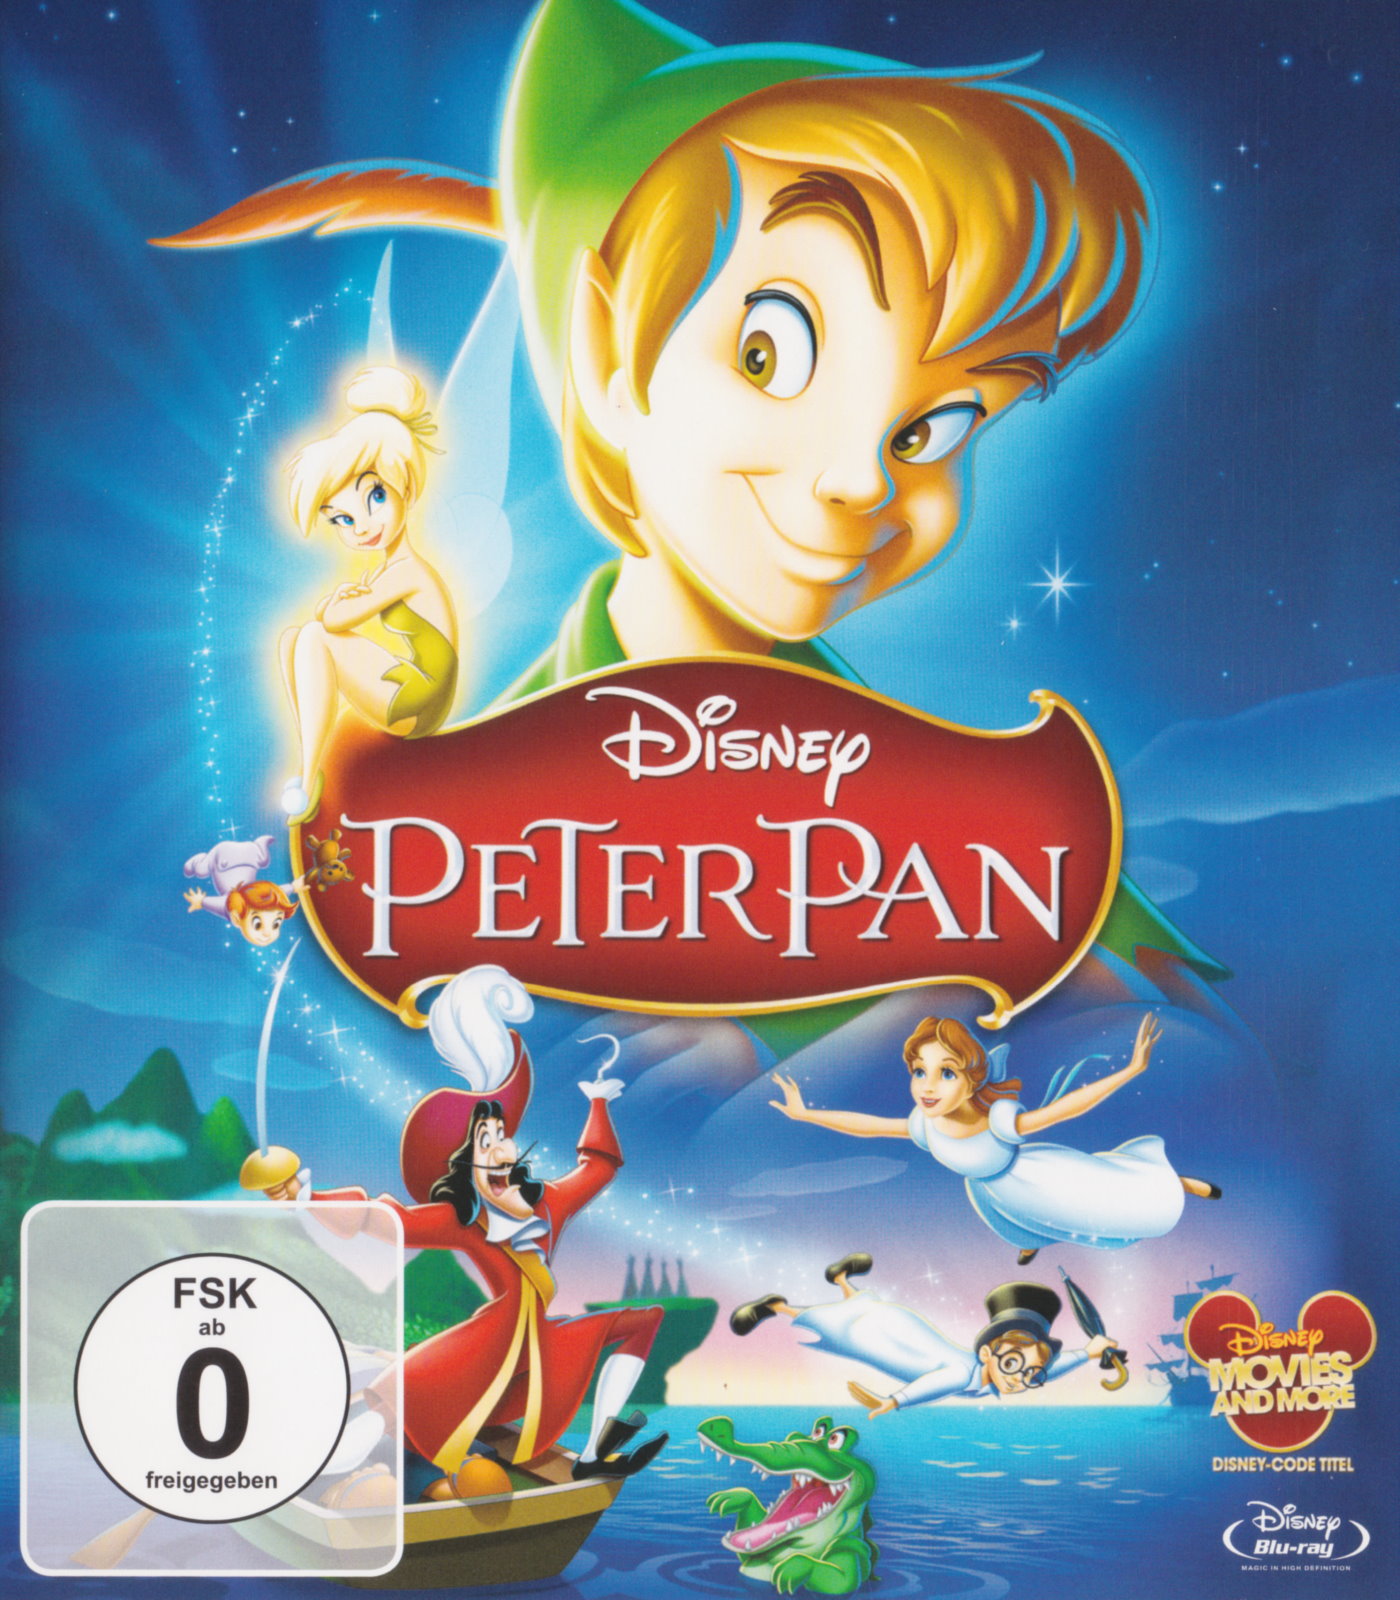 Cover - Peter Pan.jpg